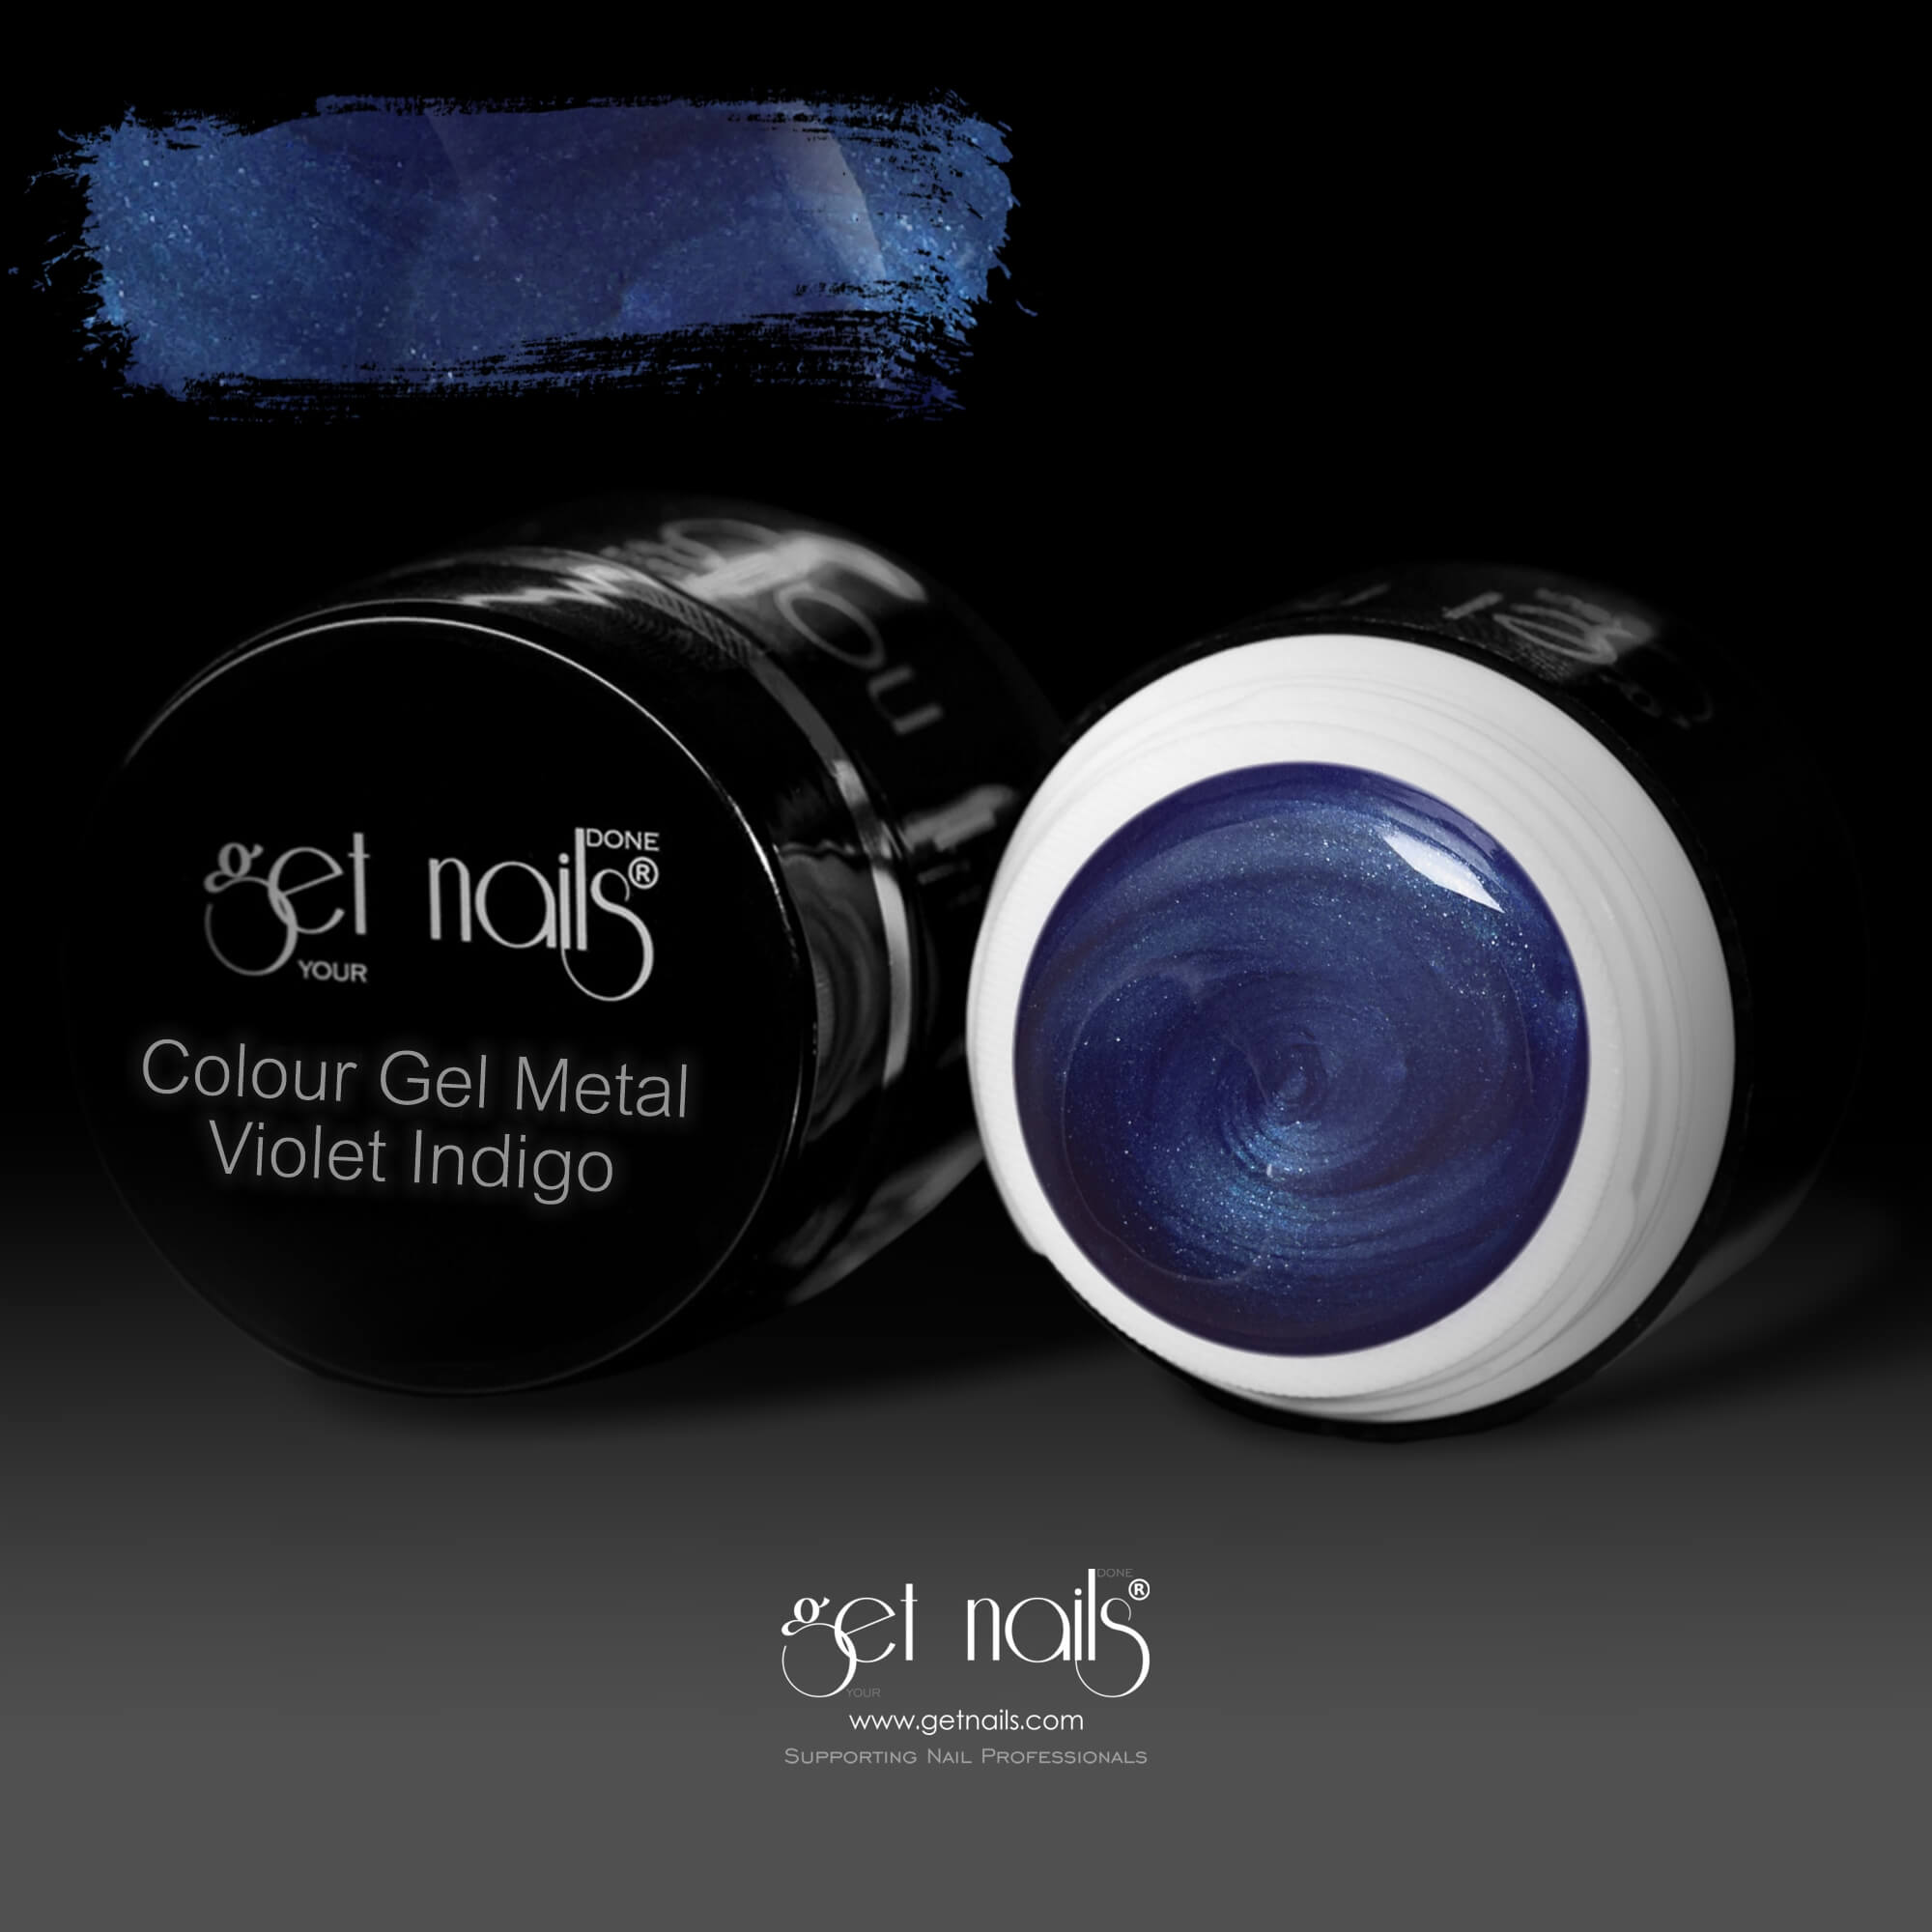 Get Nails Austria - Цветной гель металл Фиолетовый Индиго 5г